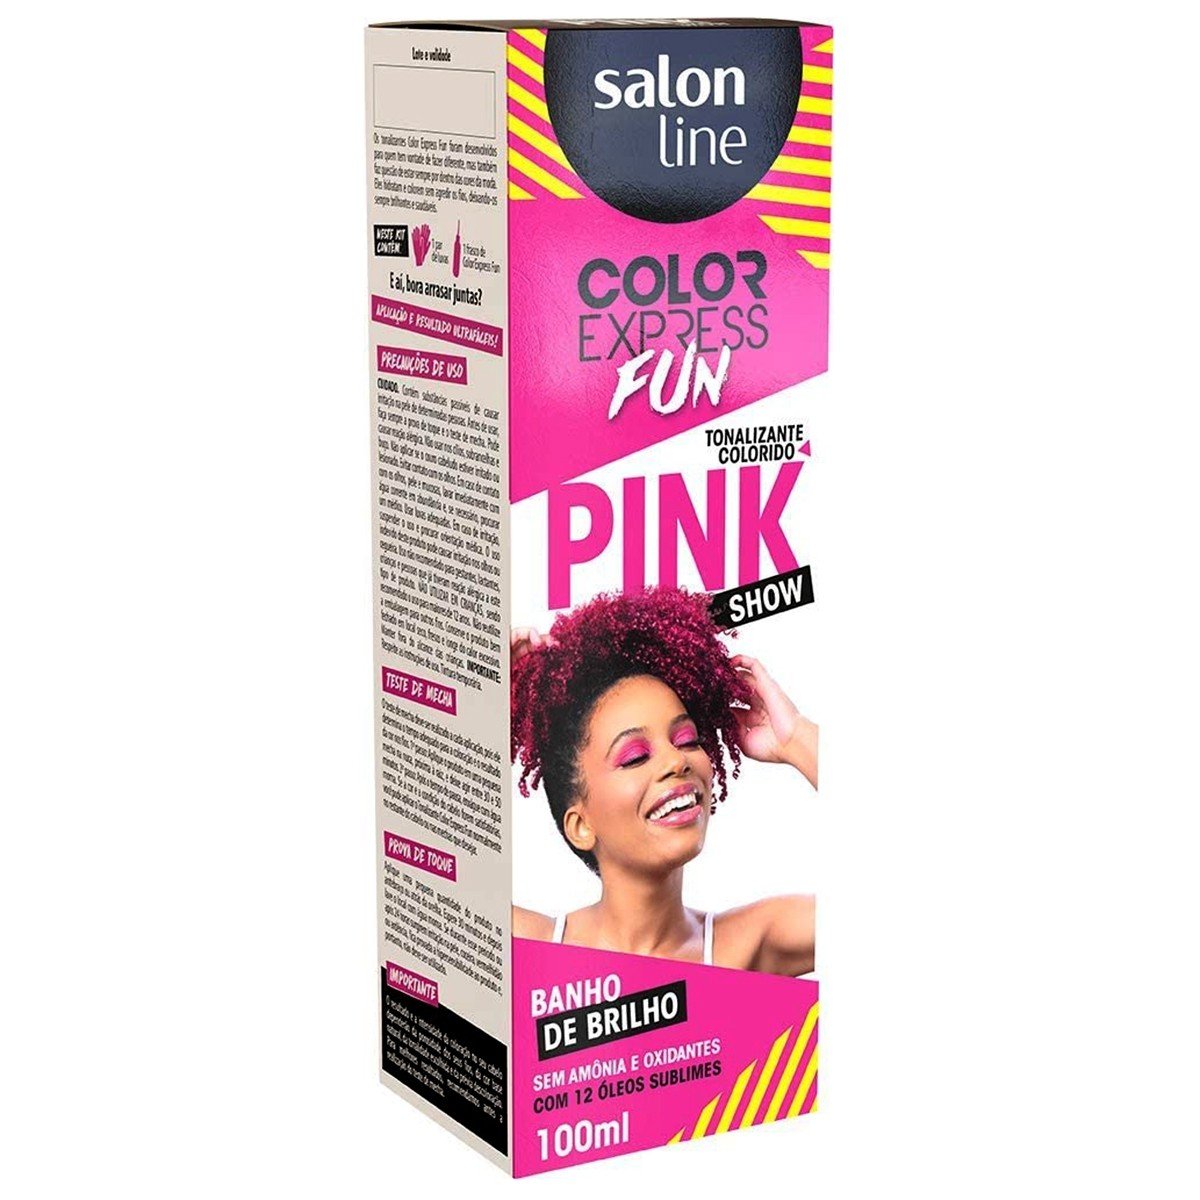 Color Express Fun Pink Show Hair Toner (100ml)